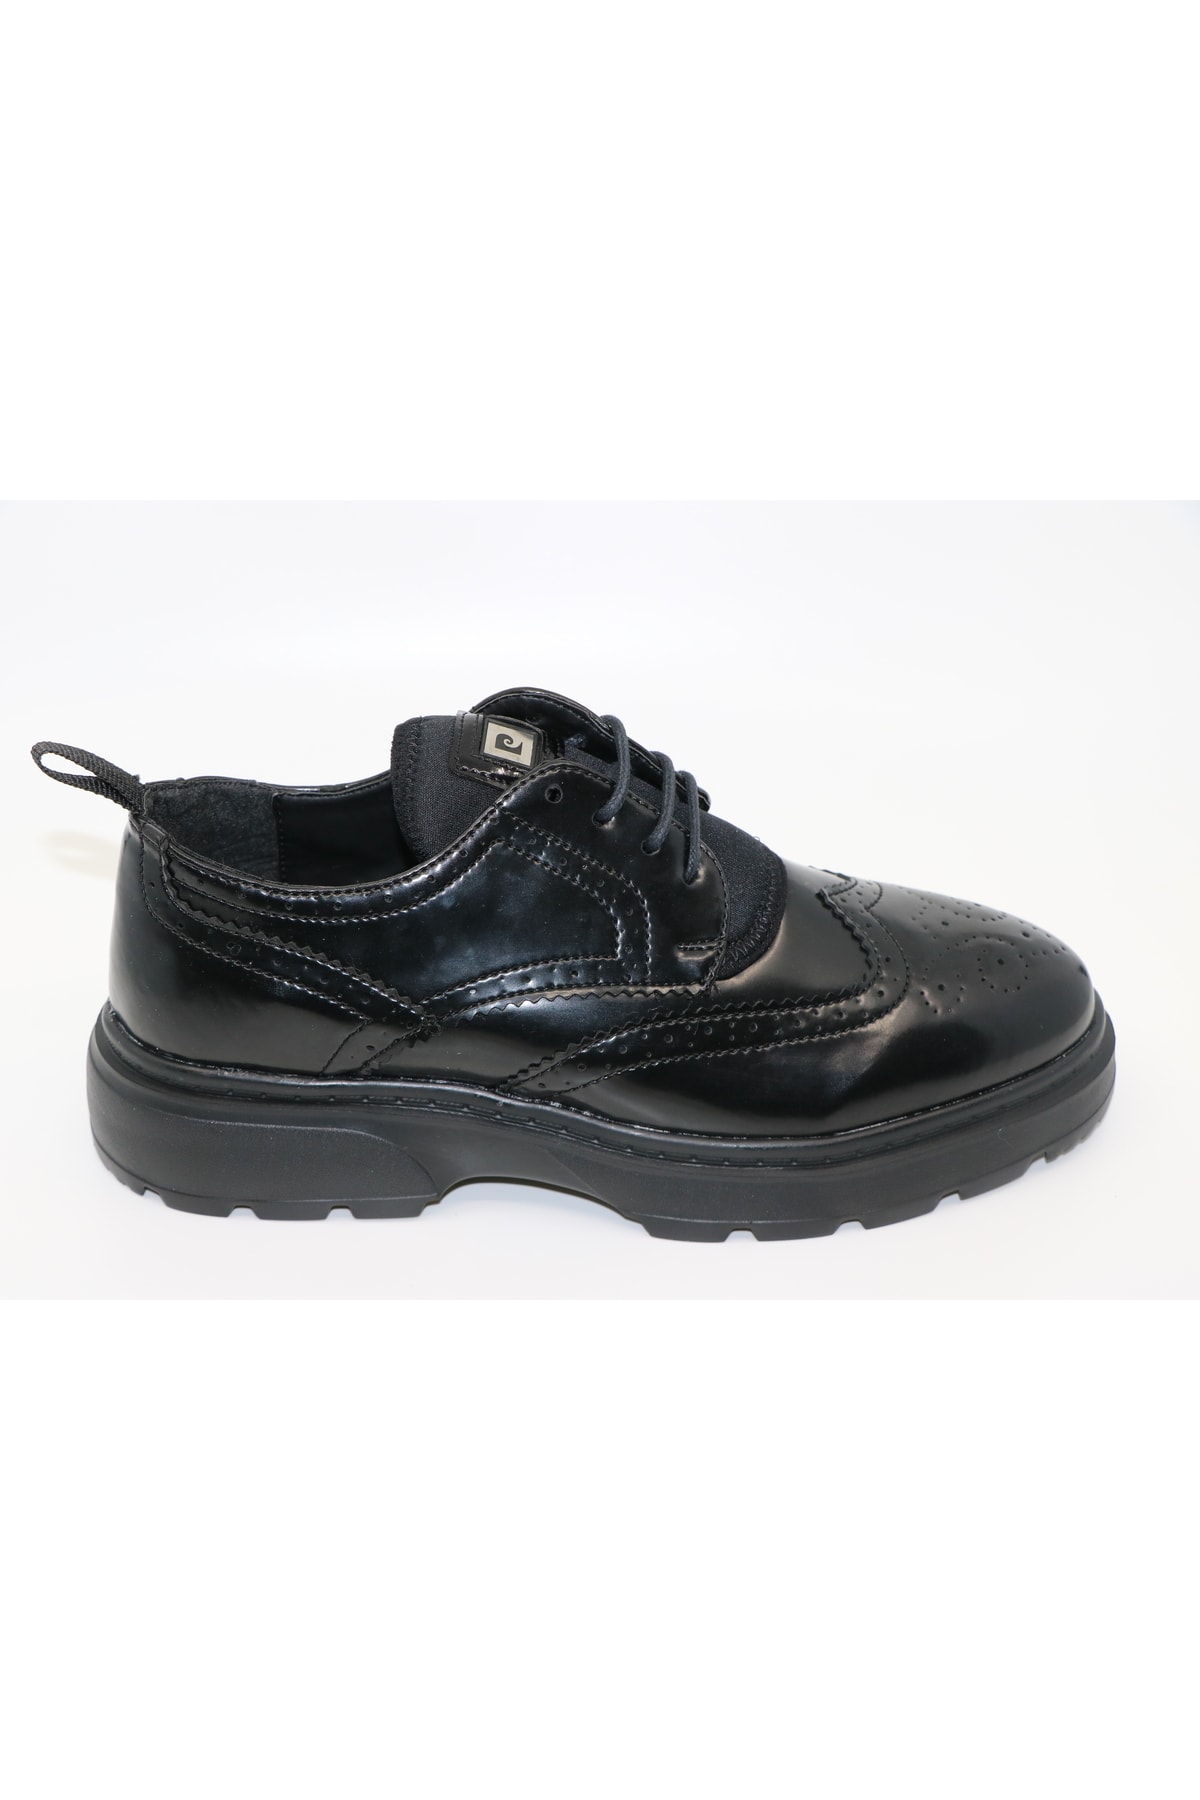 Pierre Cardin Siyah Açma Casual Erkek Klasik Ayakkabı 92568